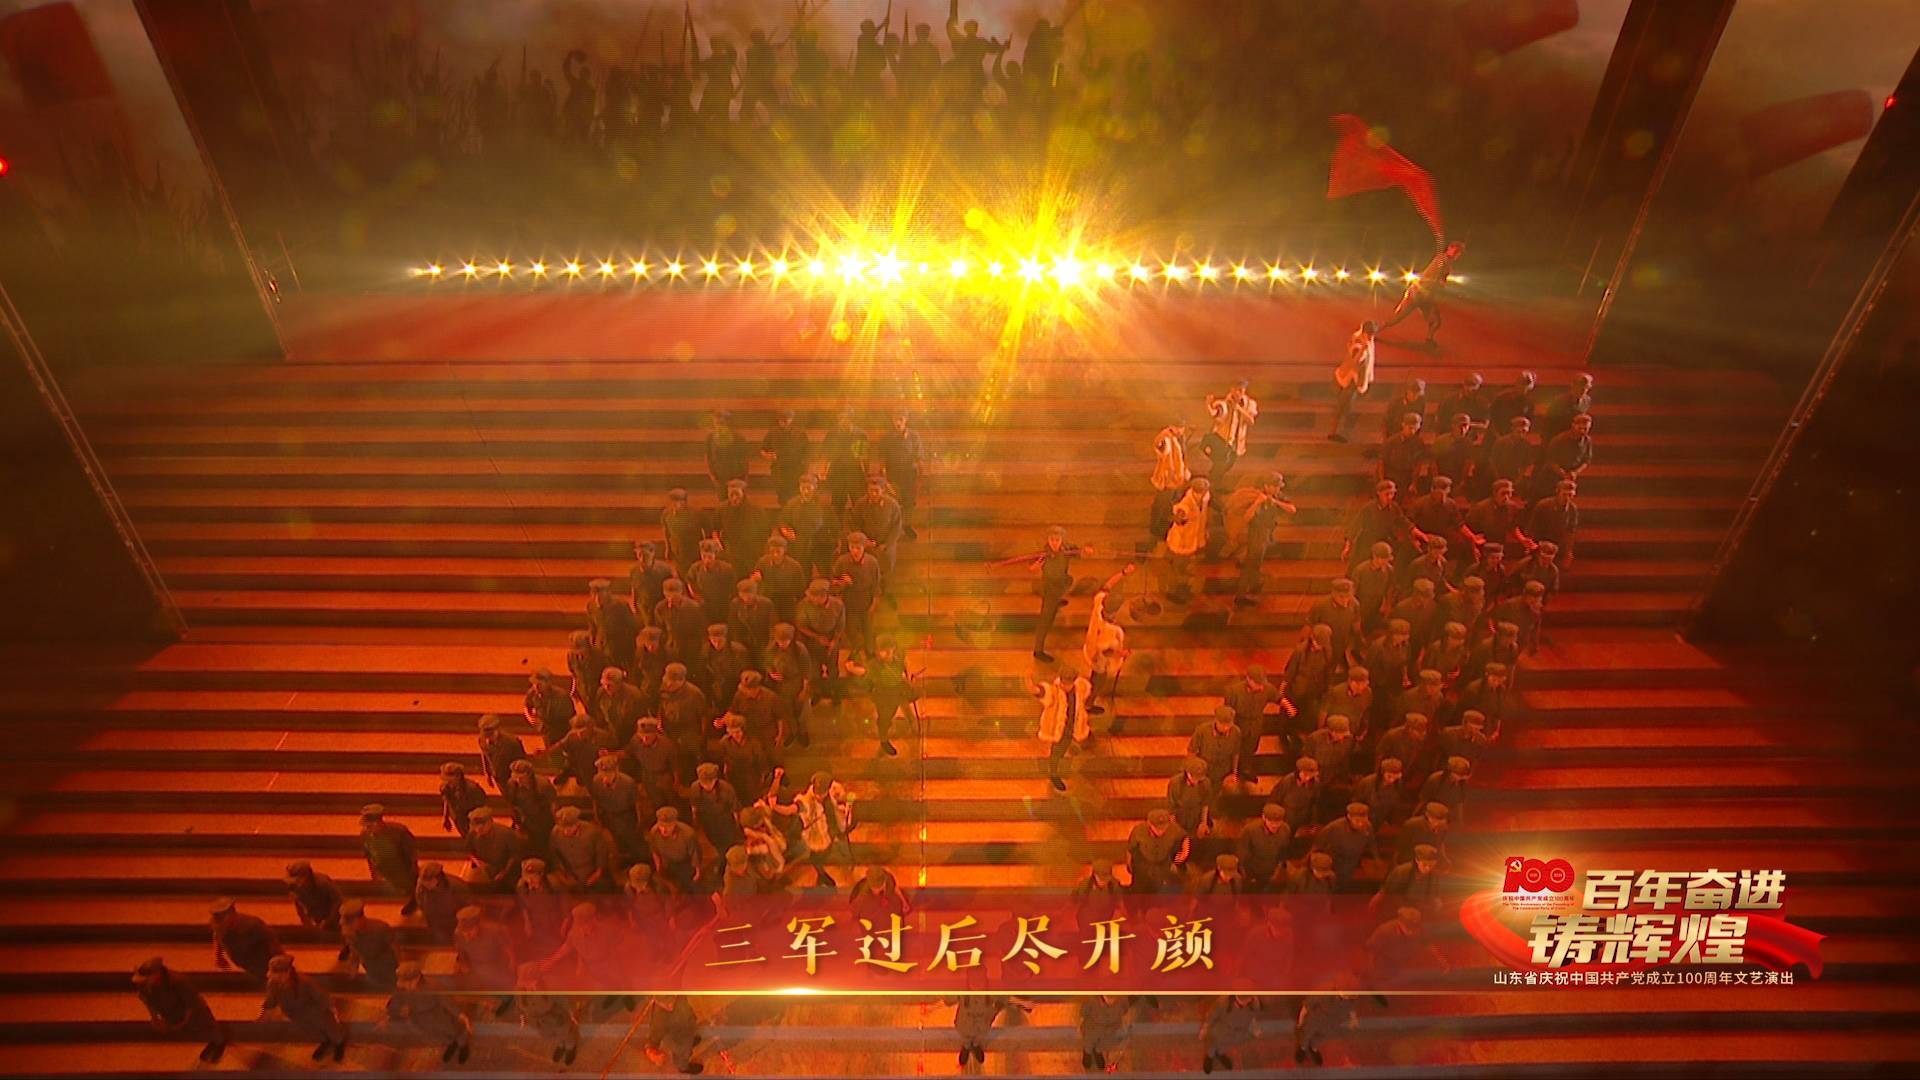 感人！歌舞《红军不怕远征难》再现红军不畏艰险的历史壮举丨山东省庆祝建党百年文艺演出